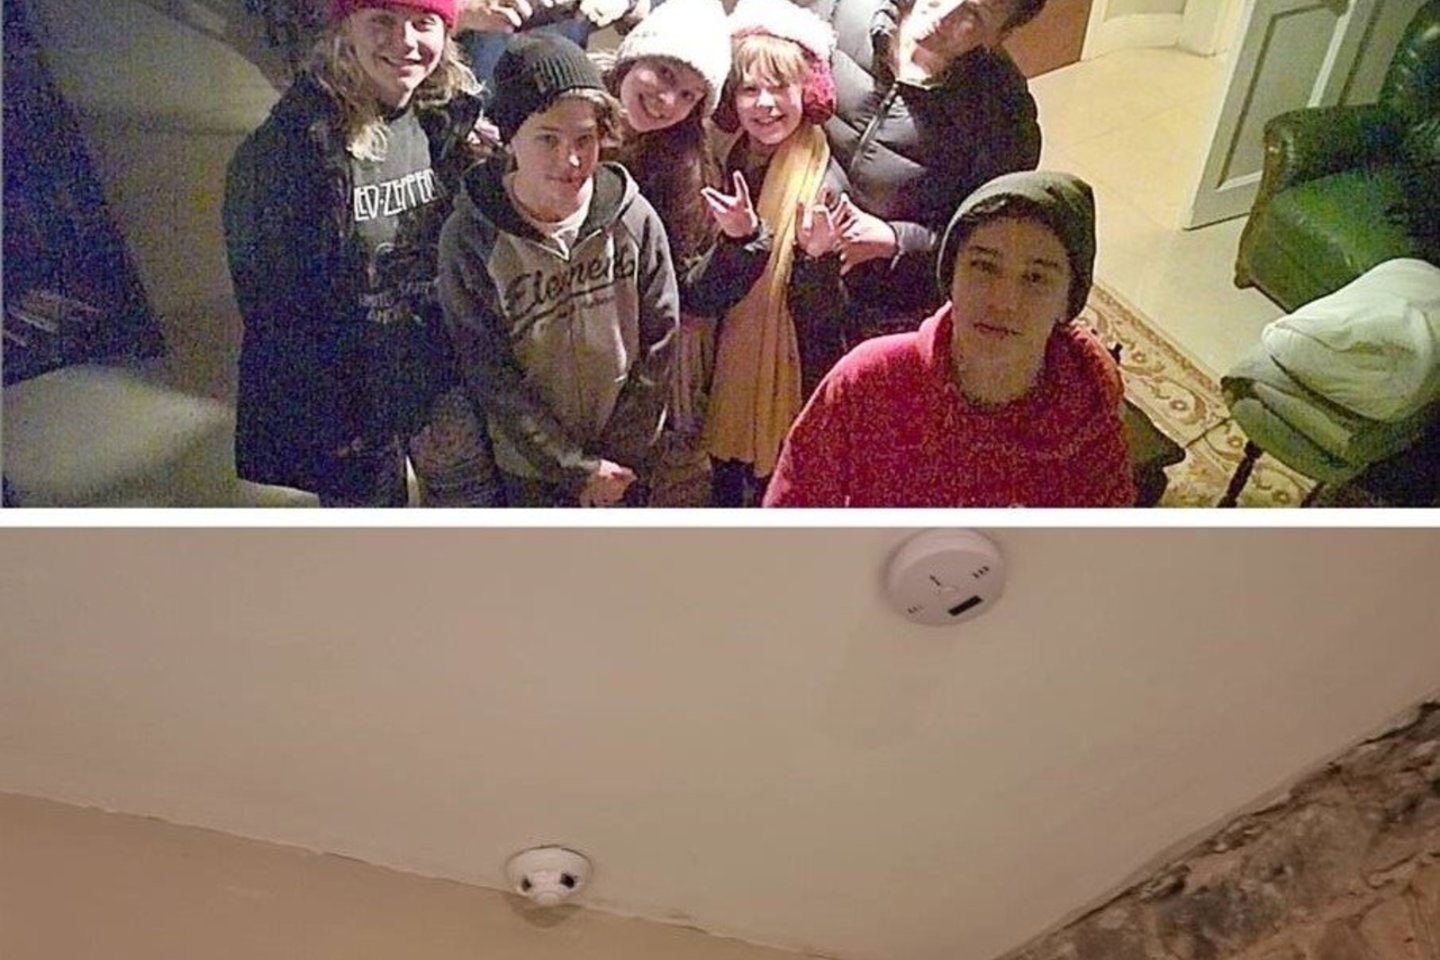 Keliautojų šeima išnuomotame bute aptiko paslėptą vaizdo stebėjimo kamerą.<br> Asm. archyvo nuotr.